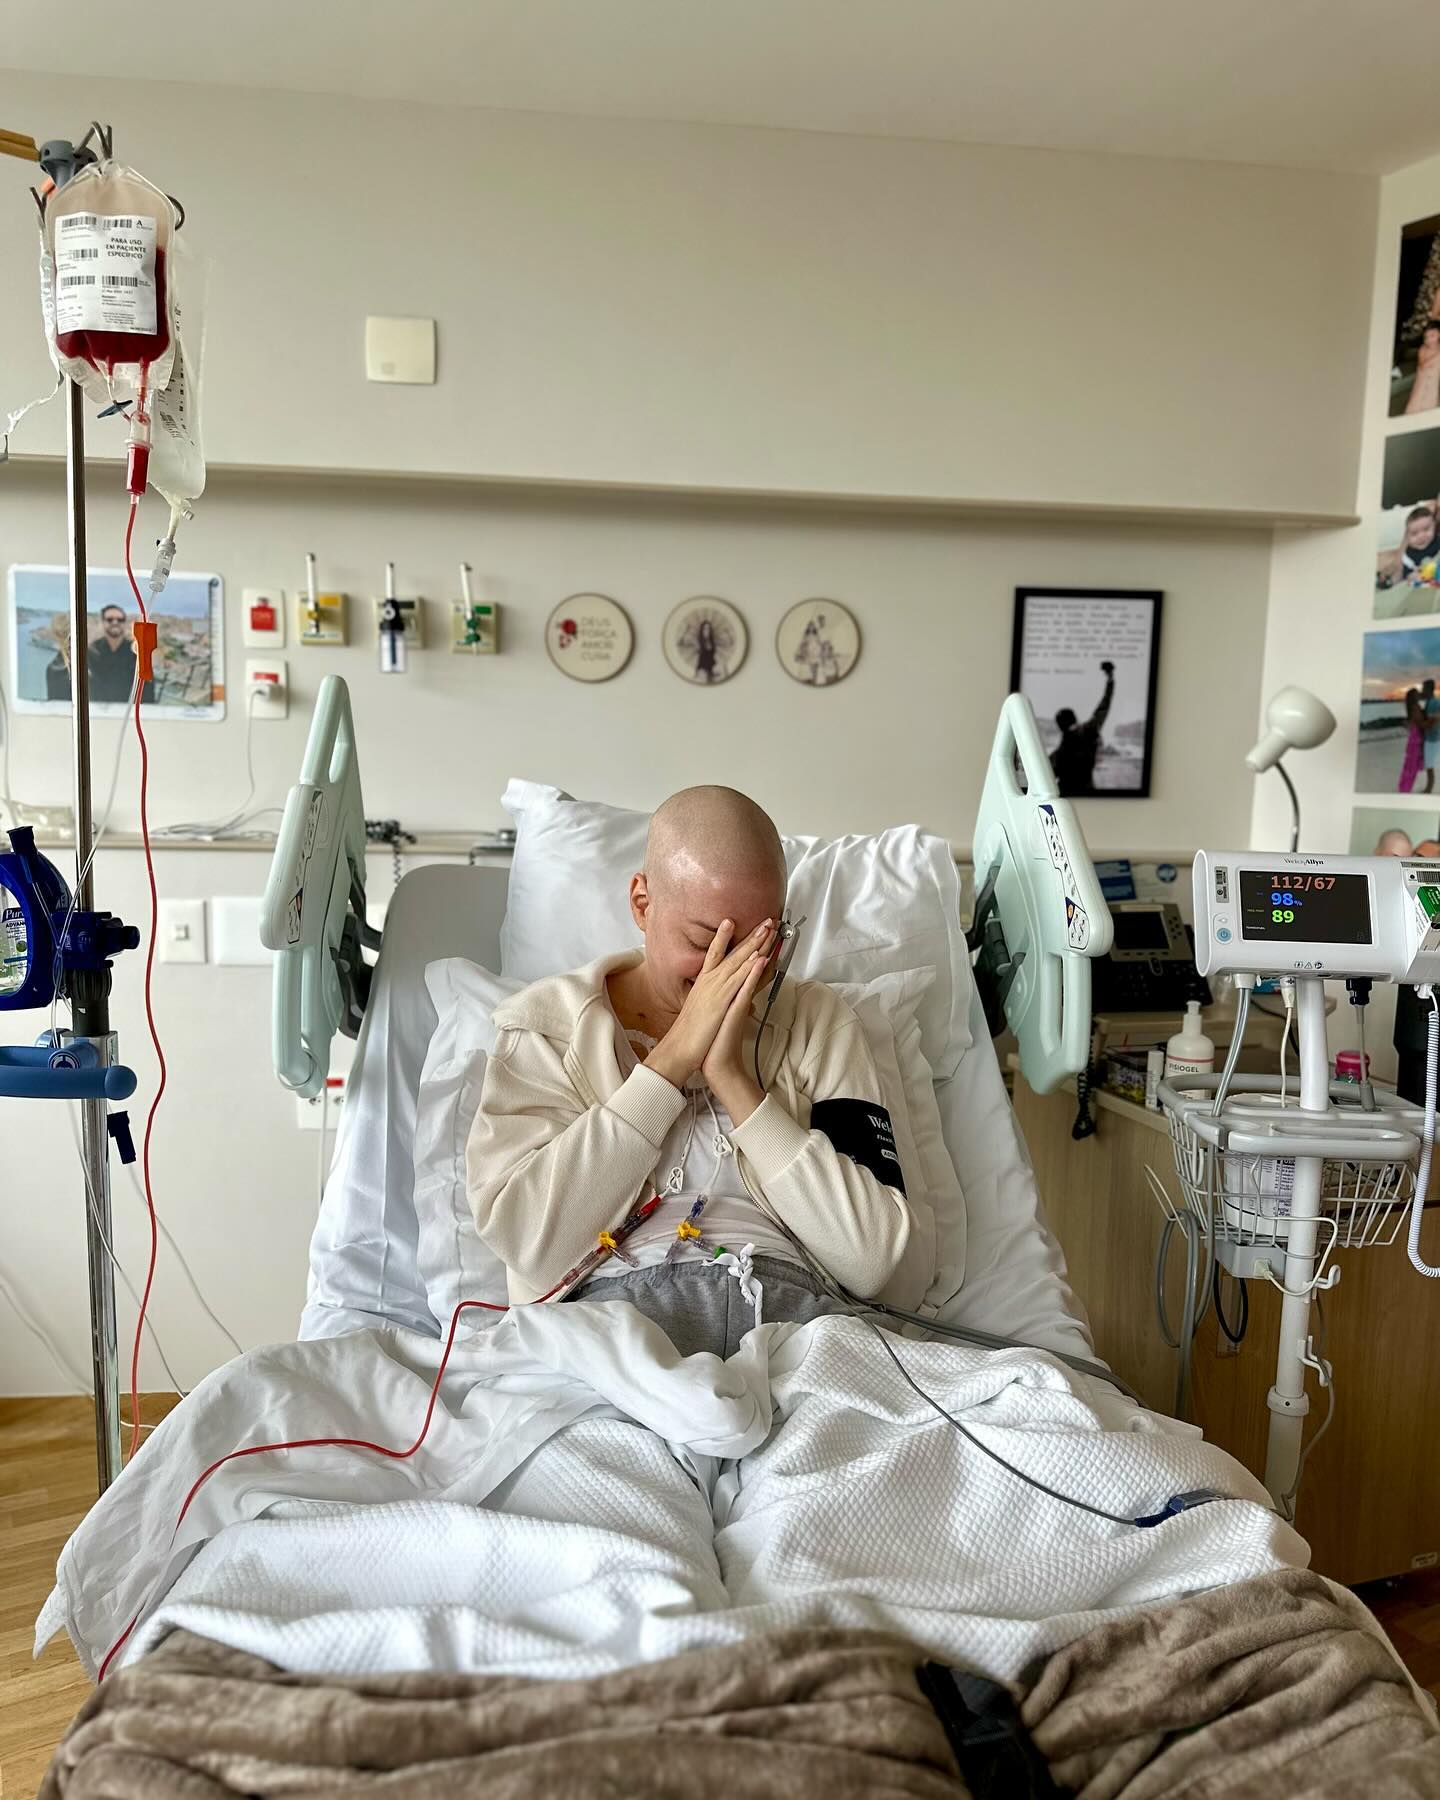 Fabiana Justus recebe doação de medula óssea: 'Segunda chance' Reprodução/Instagram